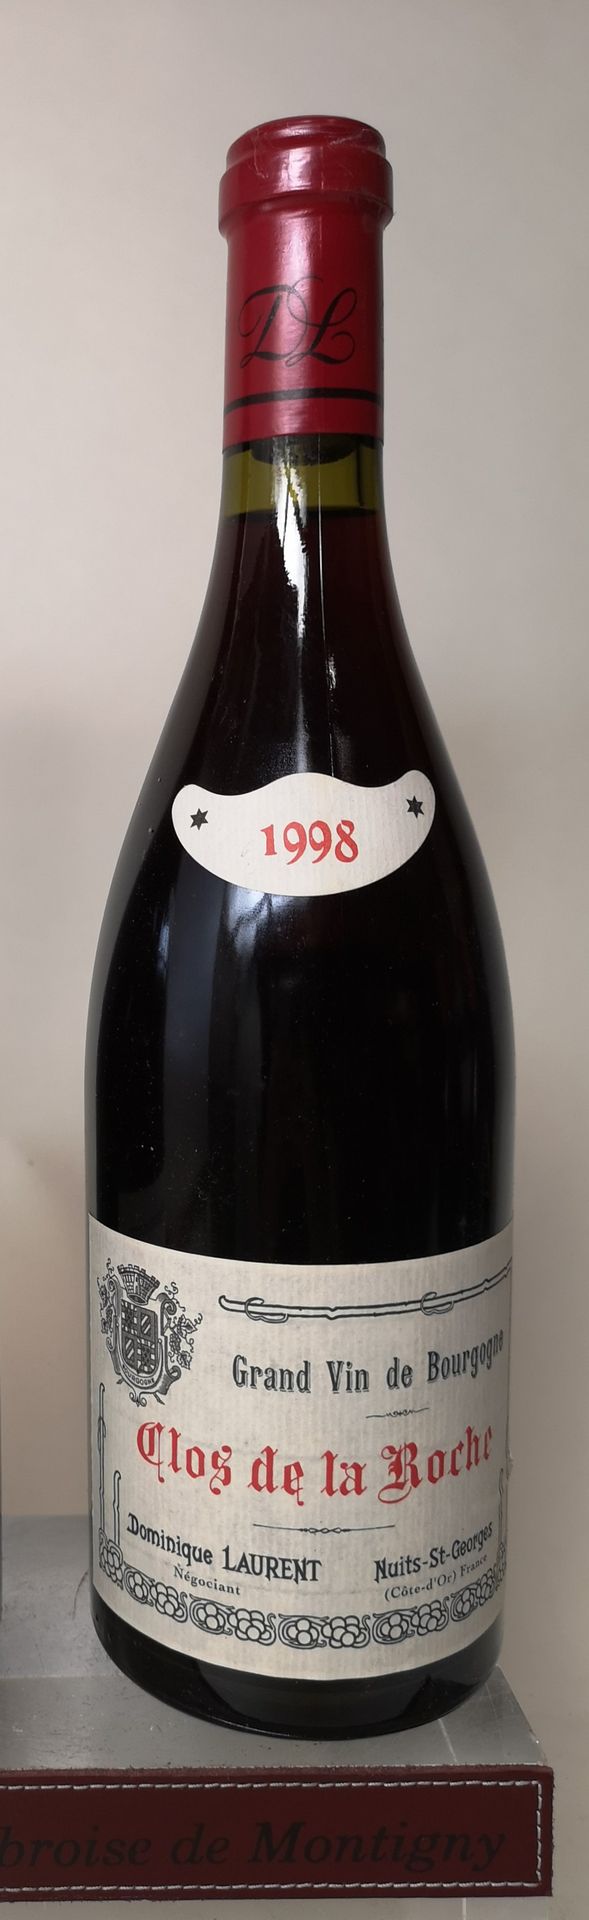 Null 
1瓶CLOS de la ROCHE Grand cru - Dominique LAURENT 1998

指定地段出售